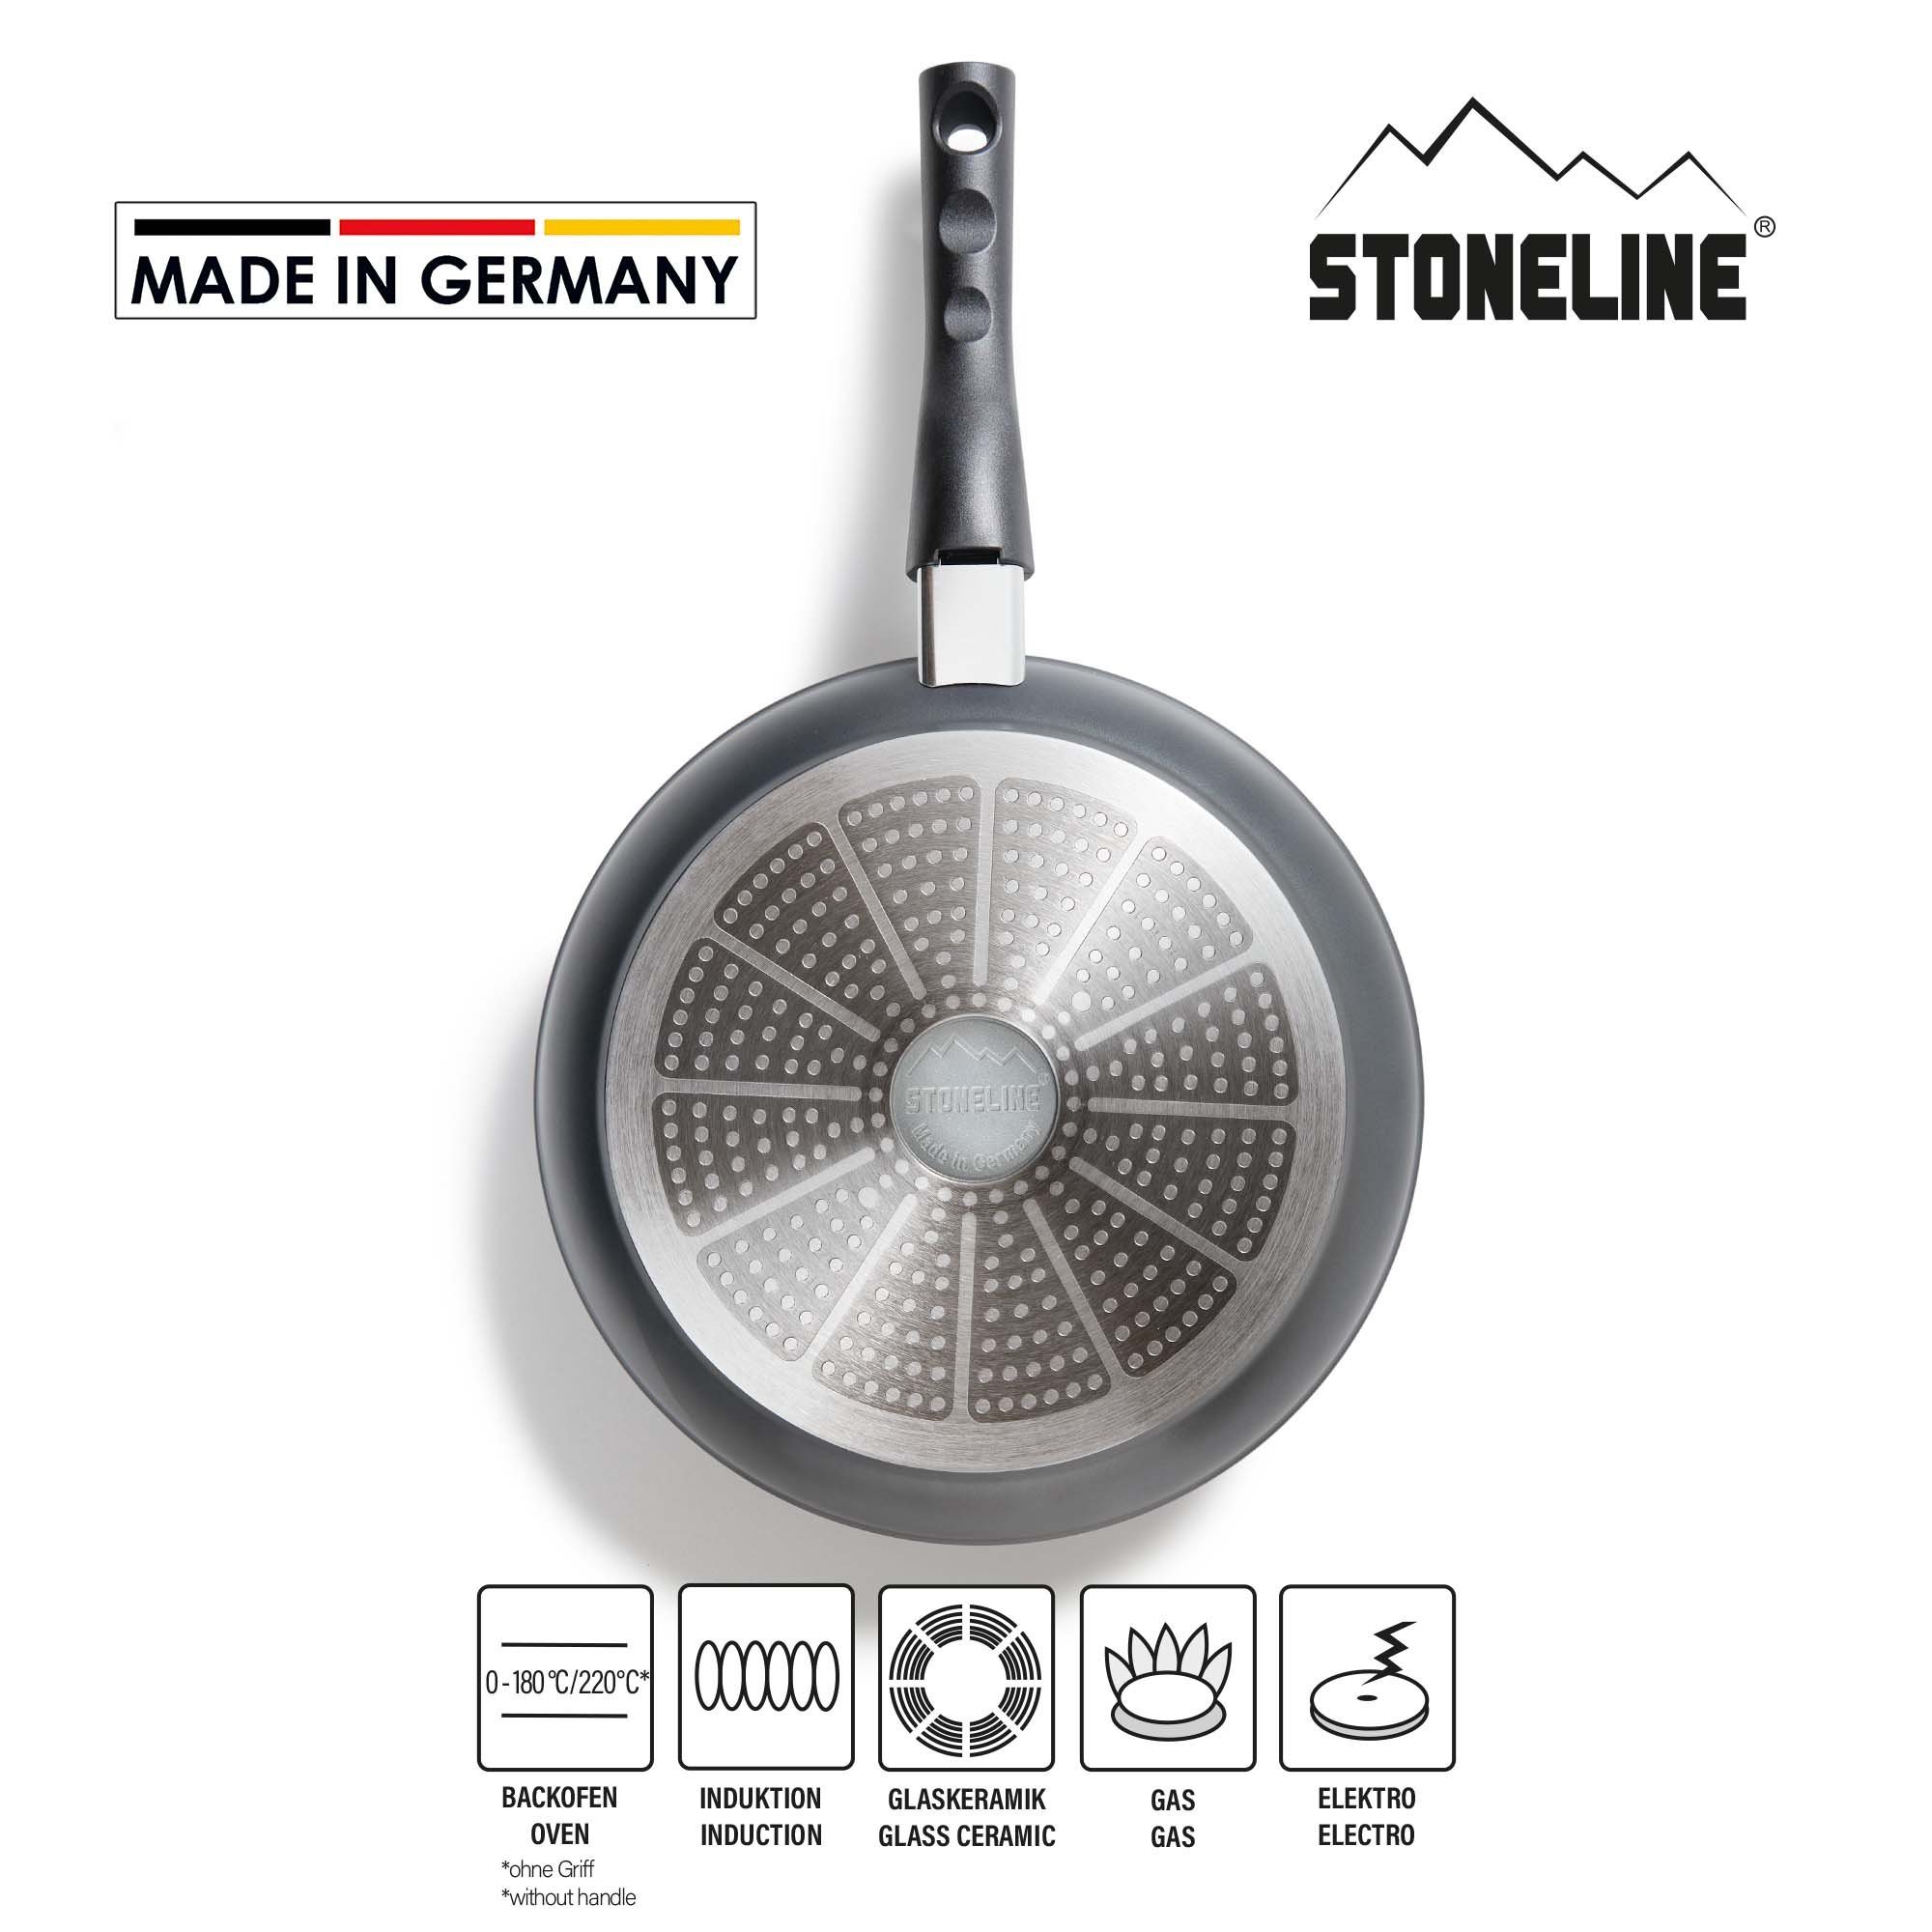 STONELINE® Bratpfanne 28 cm, Made in Germany mit abnehmbarem Griff, Induktion und antihaftbeschichtet